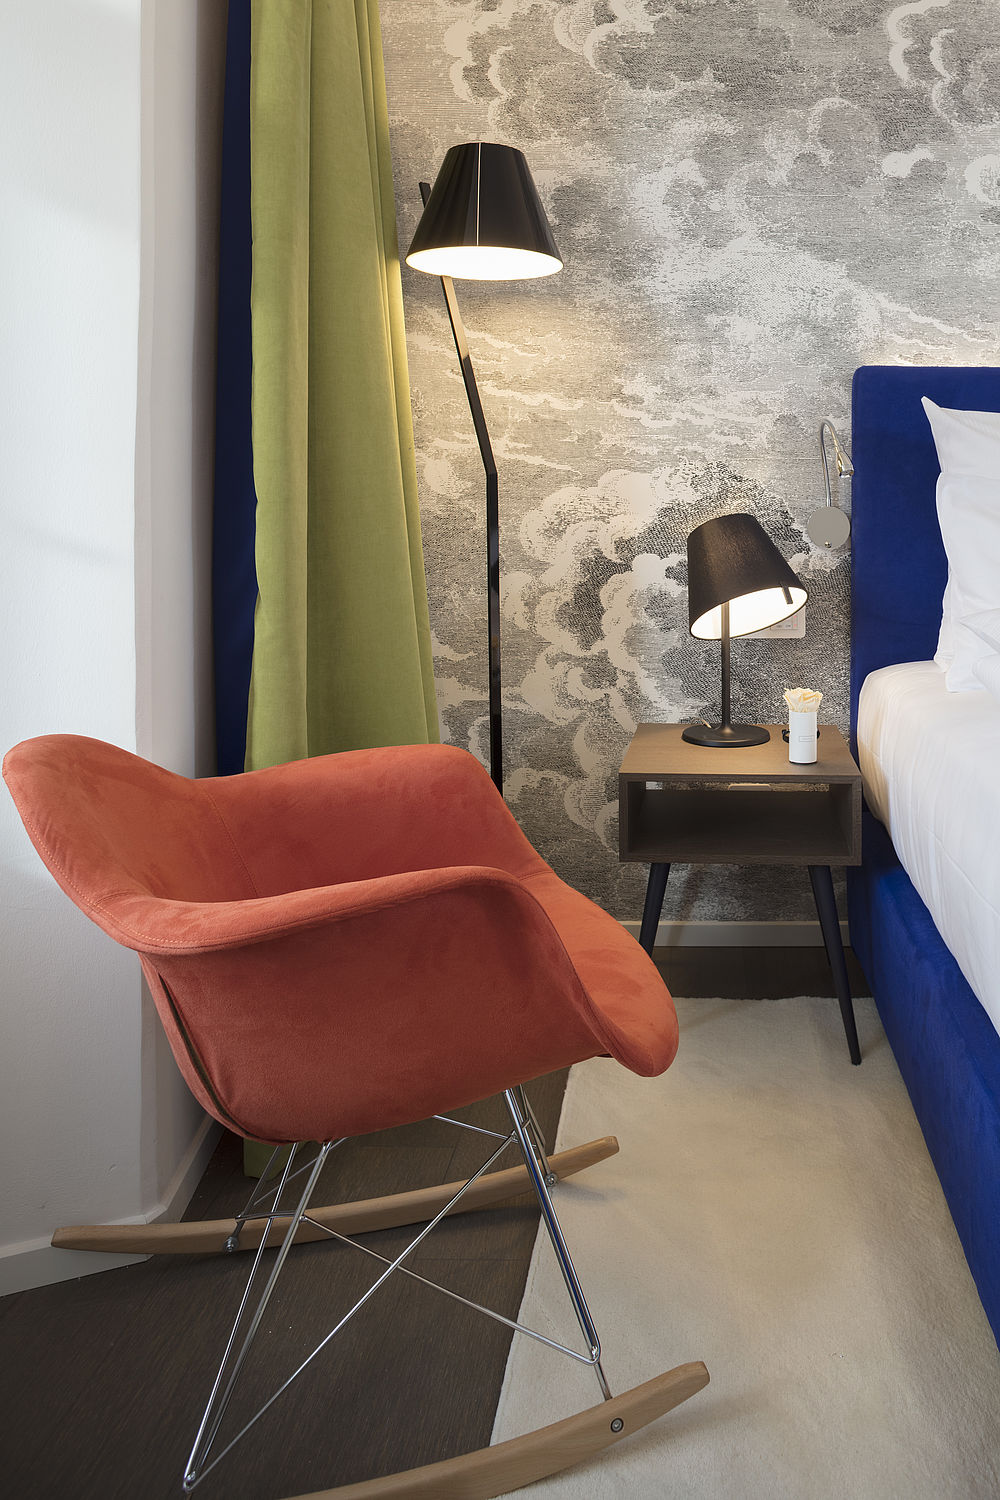 Design-Schaukelstuhl in orange neben dem Bett eines Hotelzimmers